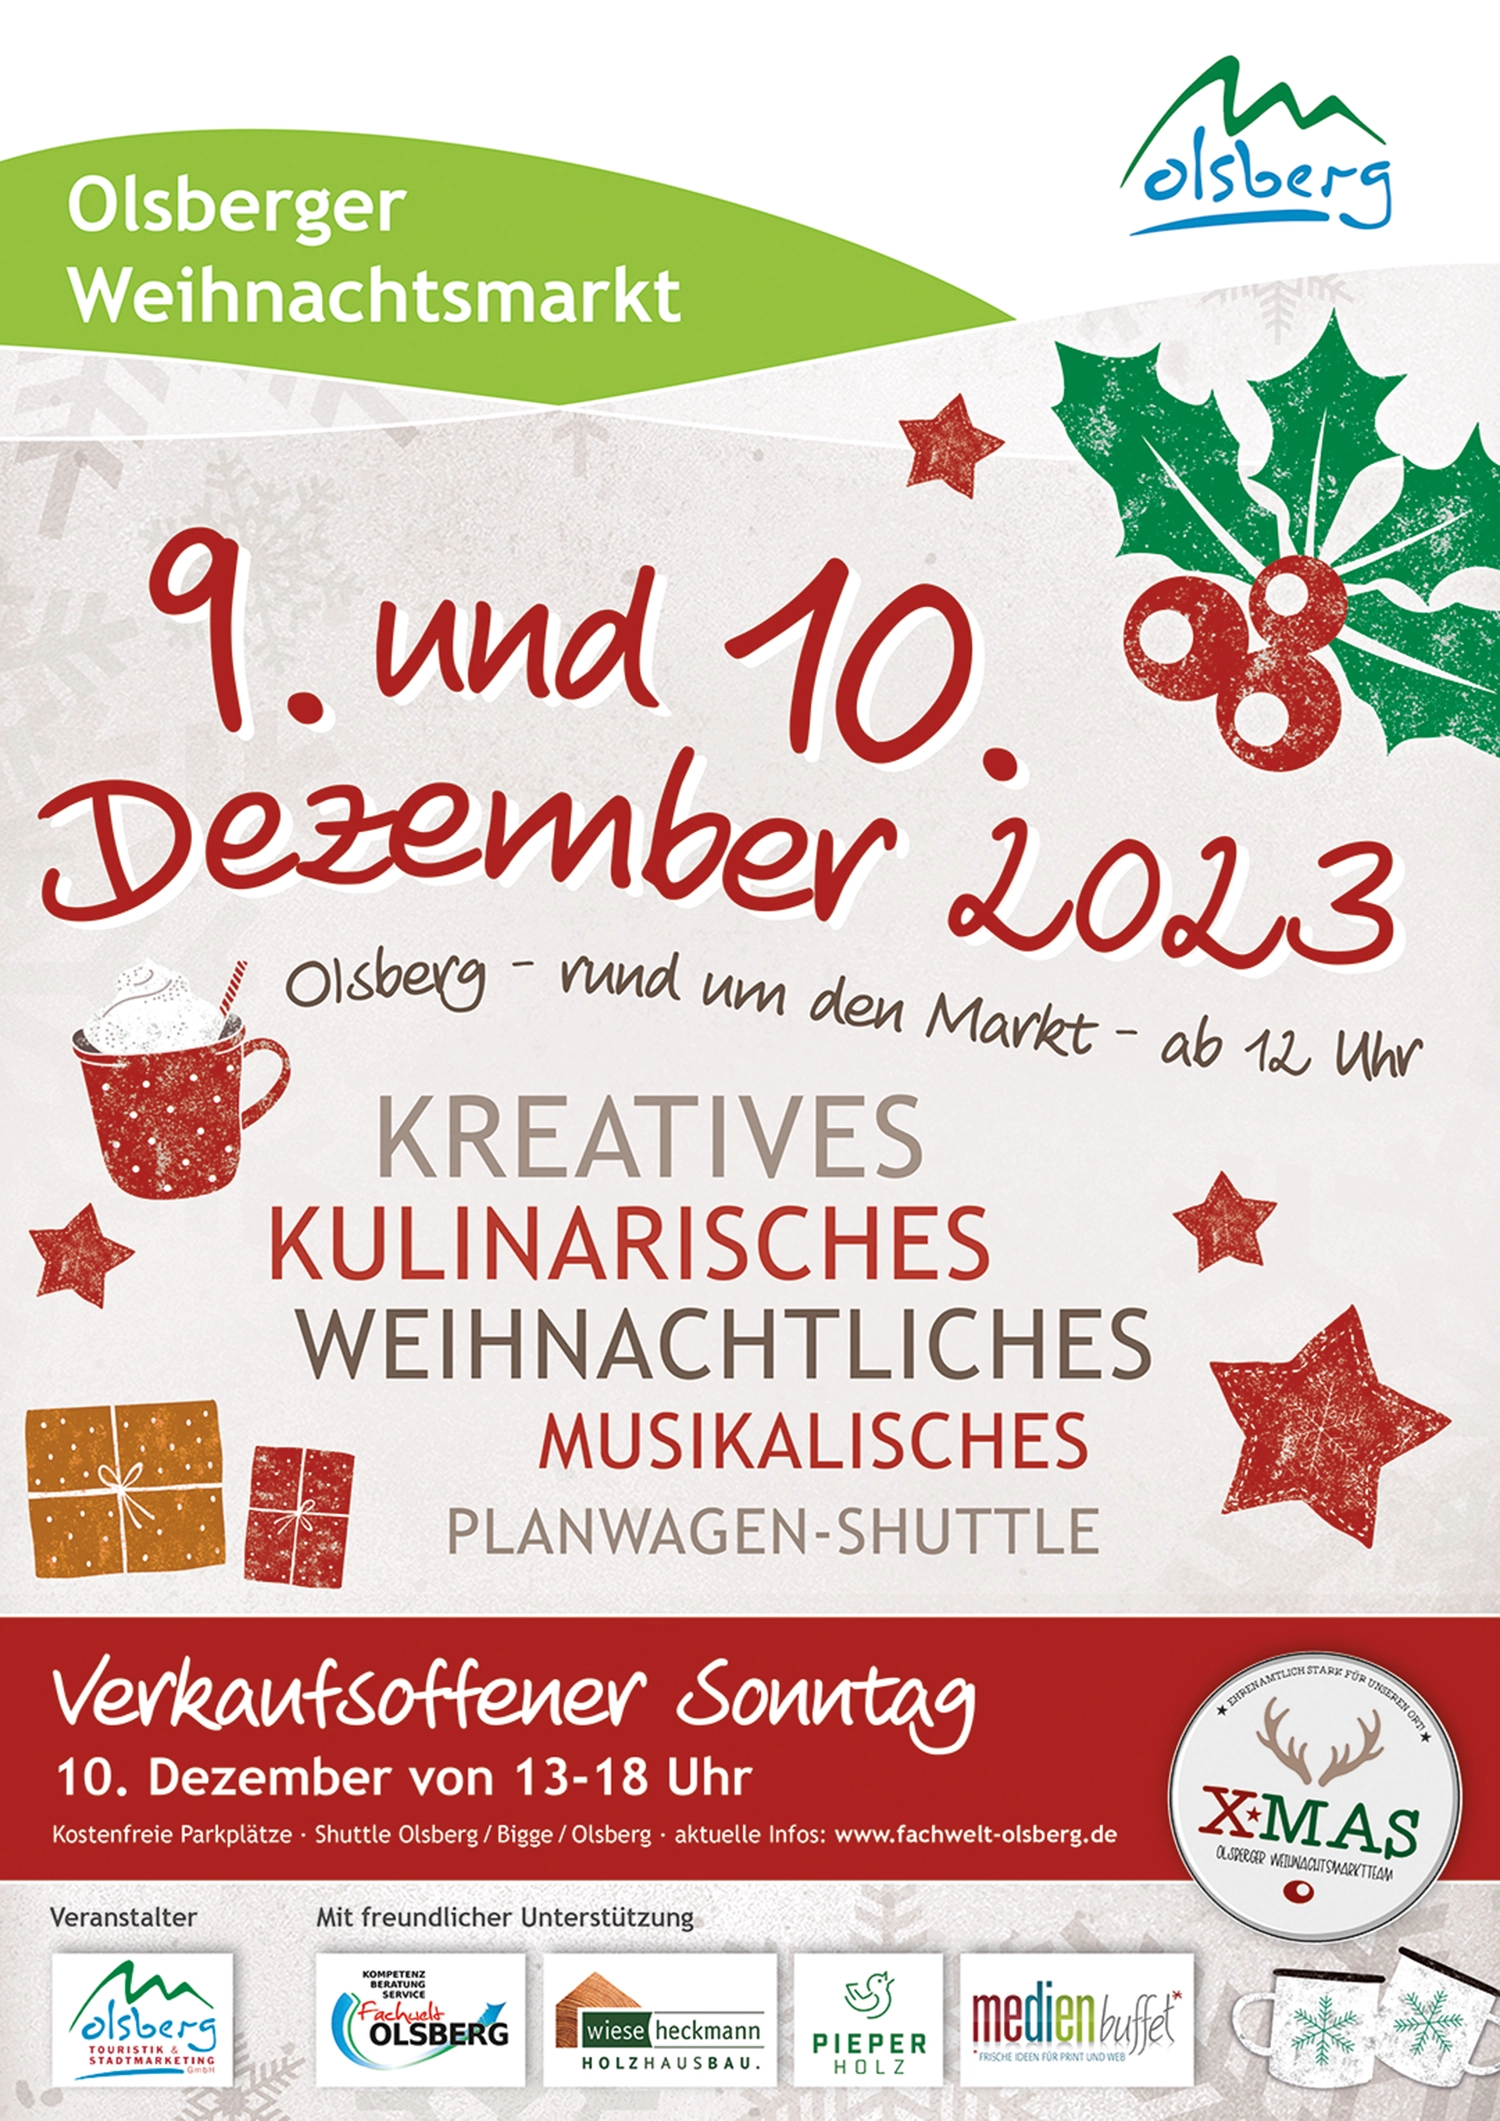 Olsberger Weihnachtsmarkt rund um den Markt am 9. und 10. Dezember 2023